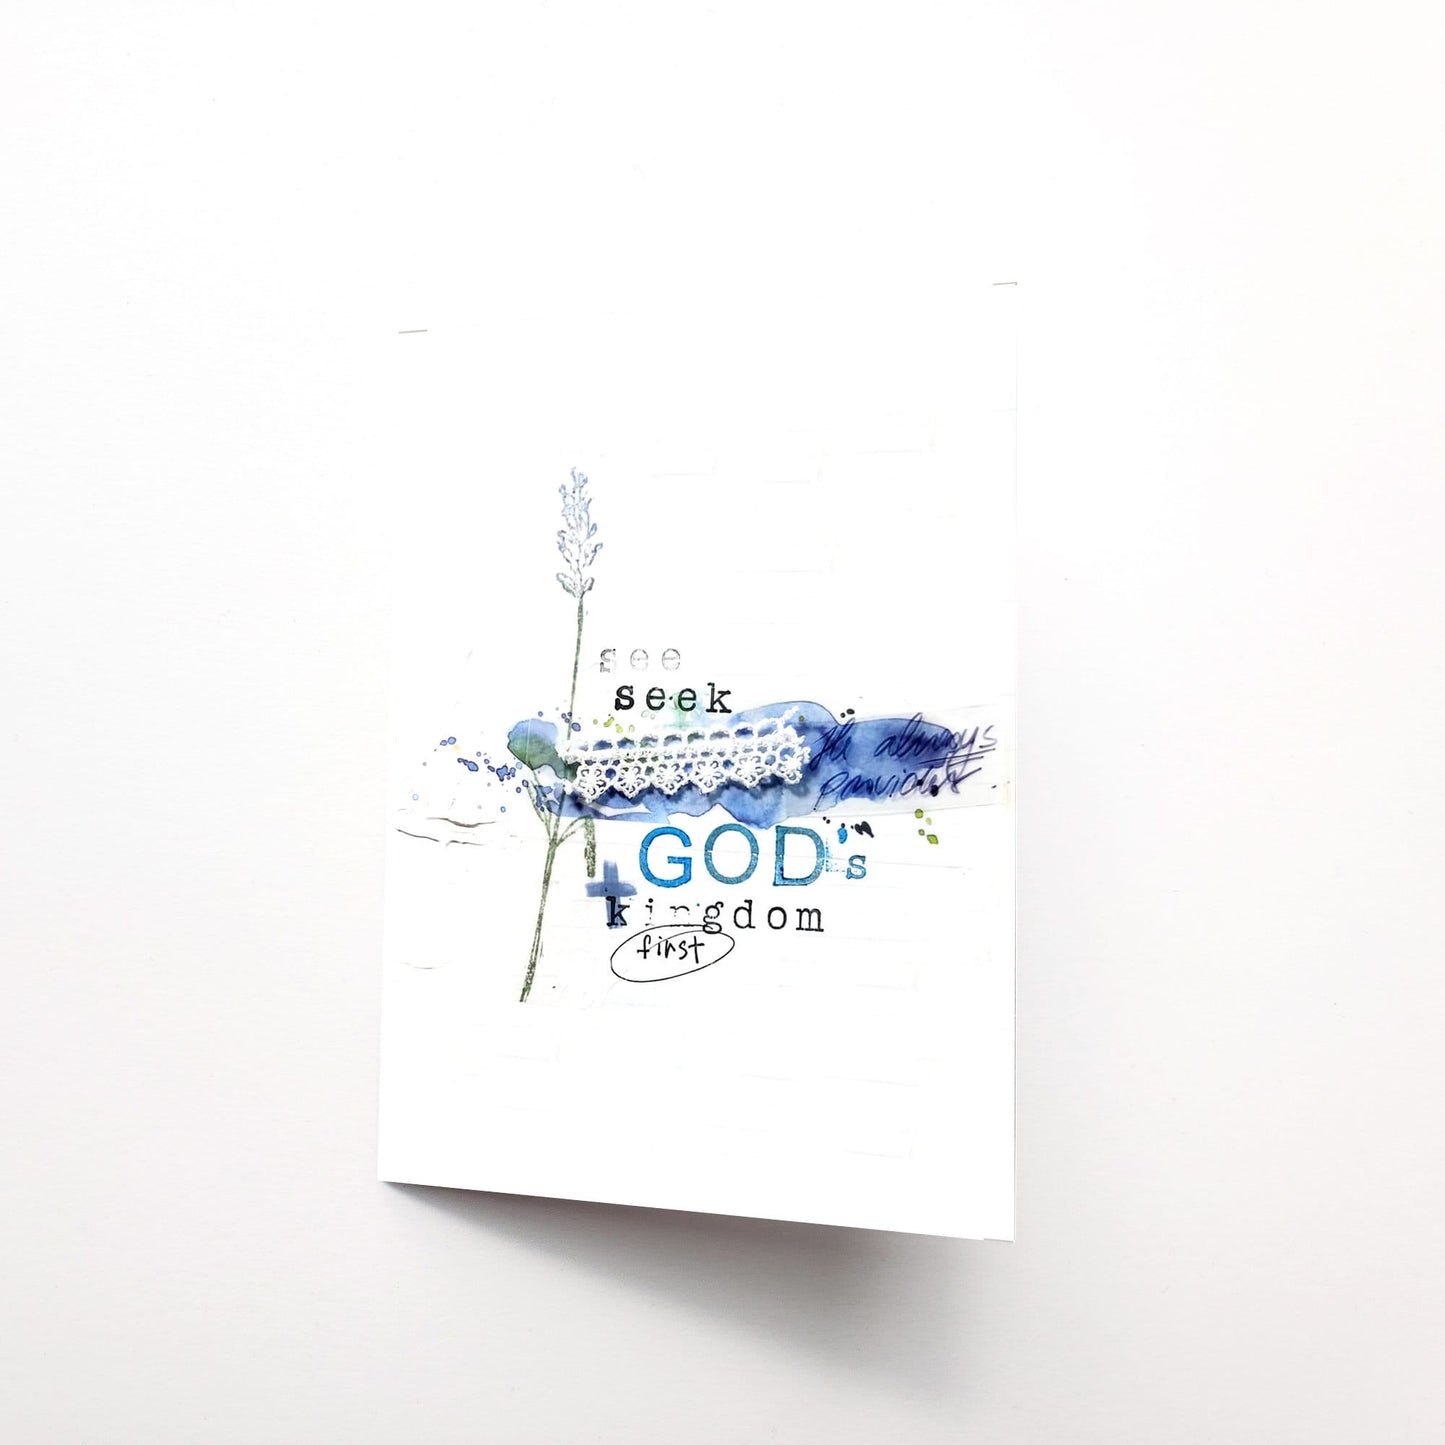 Seek God's Kingdom First Note Card 5x7